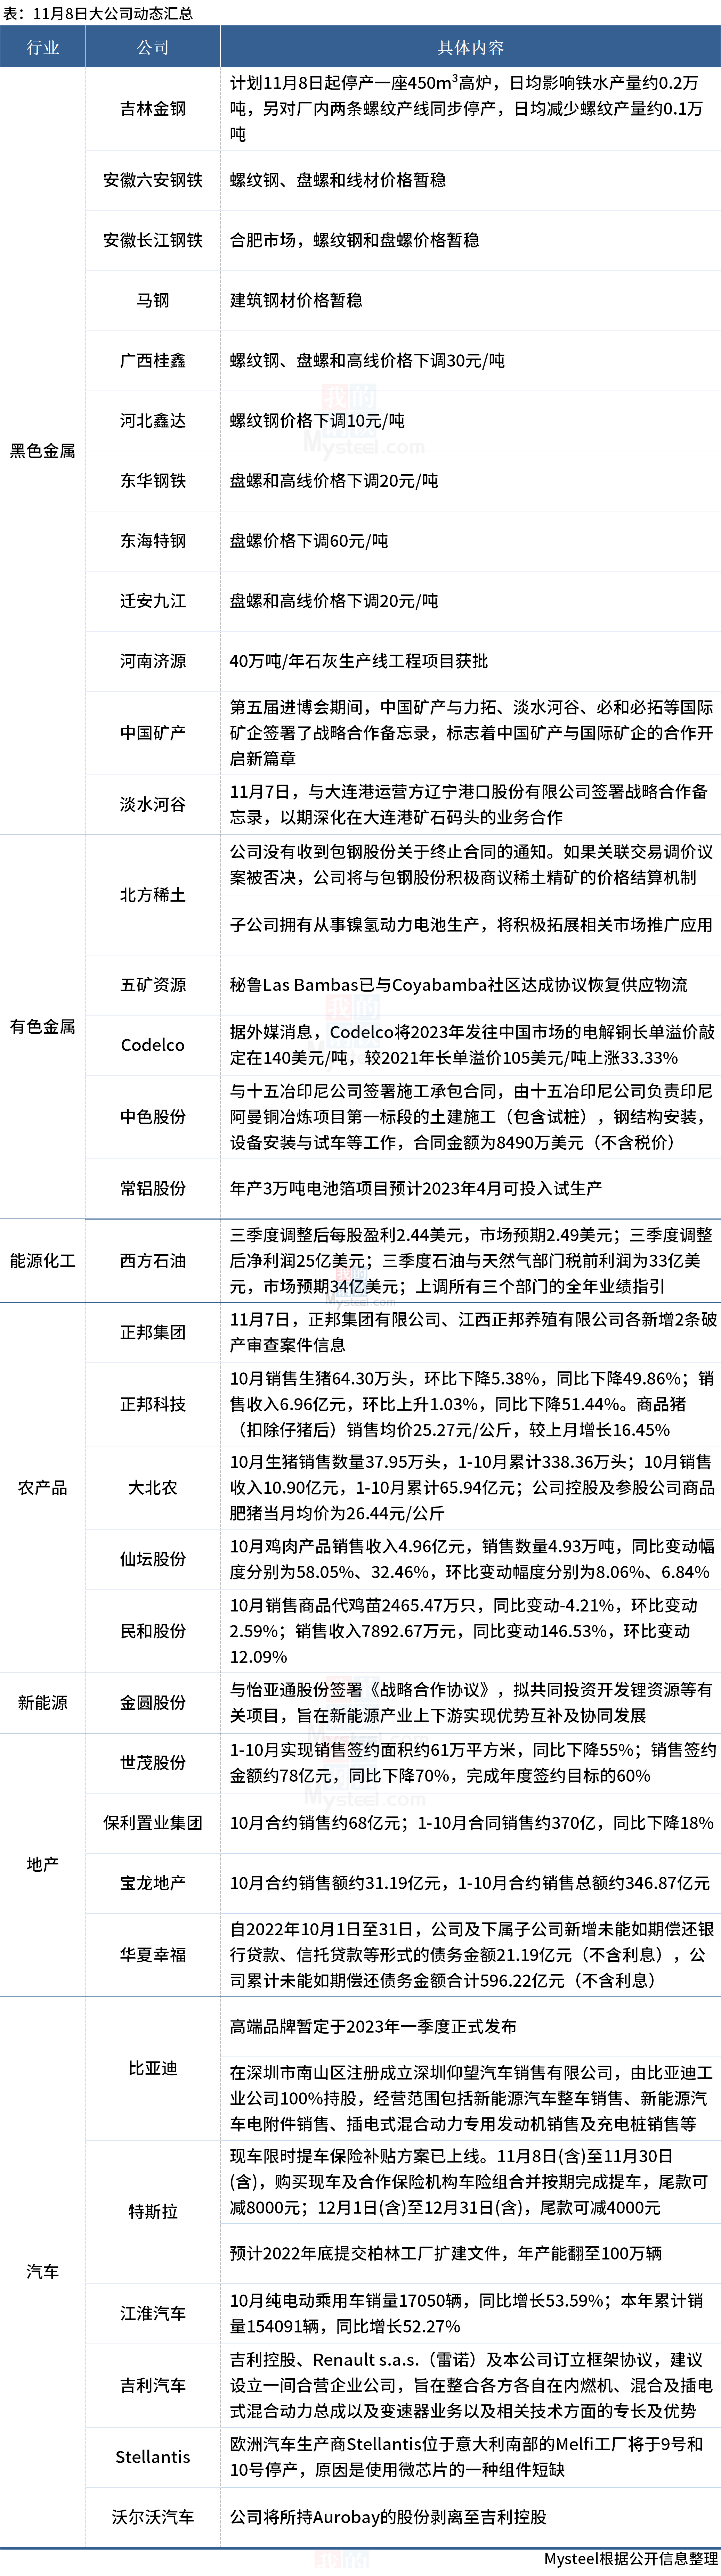 大公司动态：中国矿产签约三大矿山，猪企10月数据亮眼